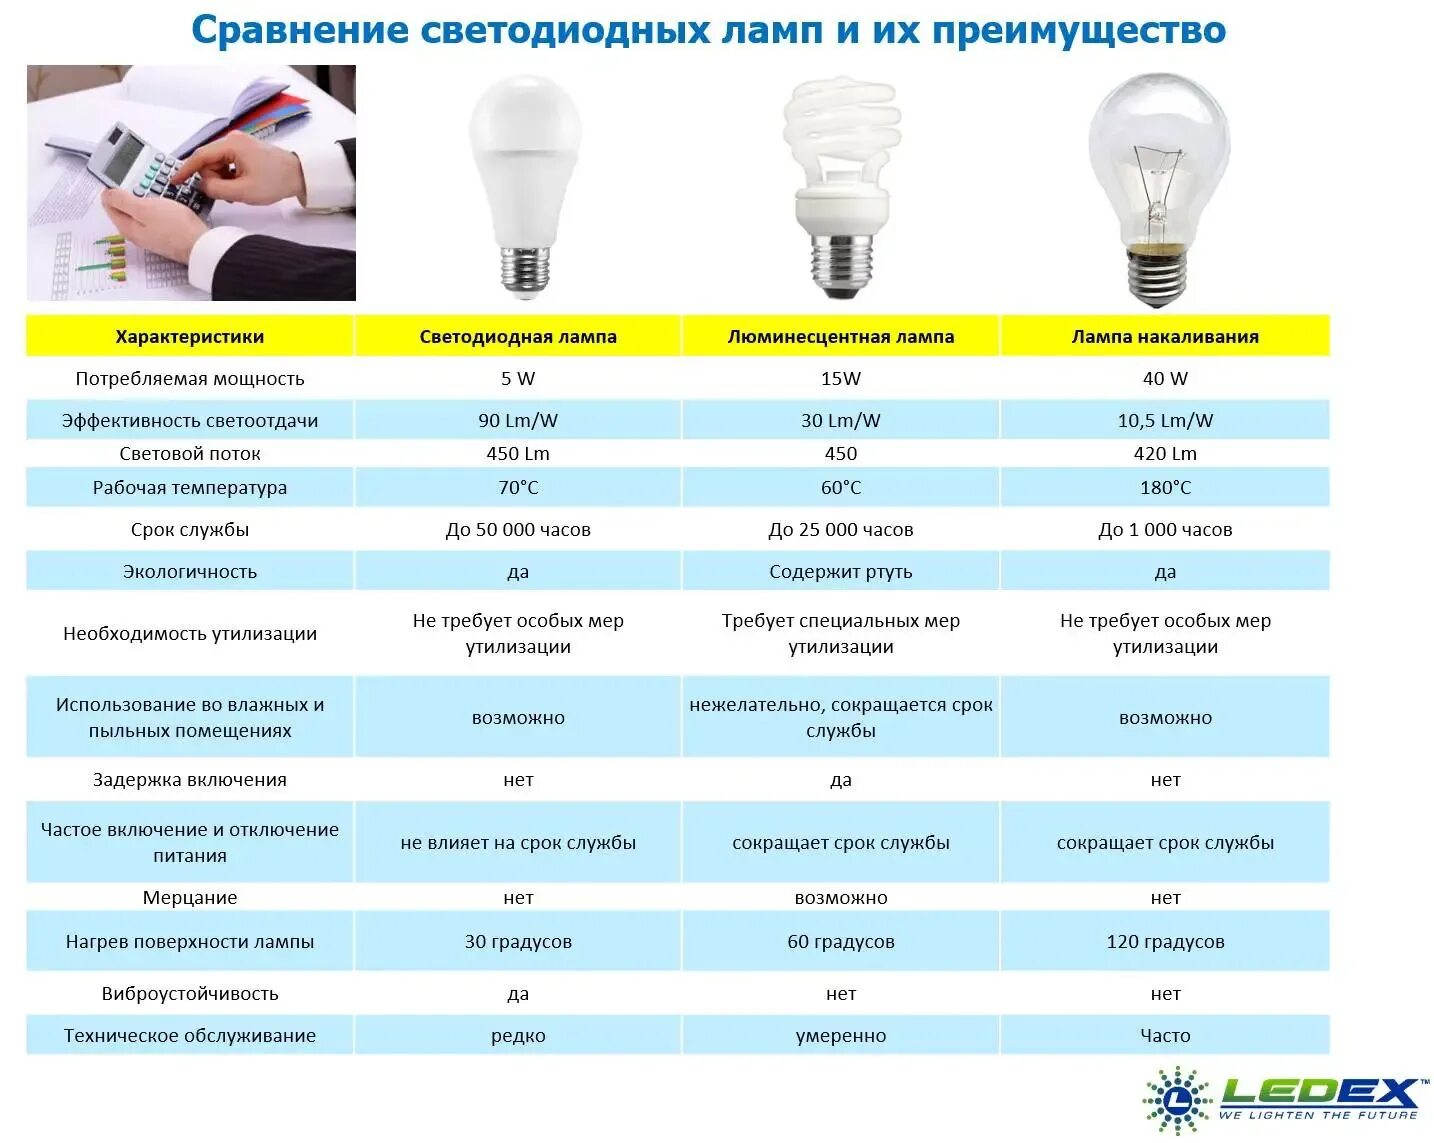 Источников света а также. Таблица лампа накаливания энергосберегающая и светодиодная. Сравнительная таблица мощности светодиодных ламп и ламп накаливания. Таблица лампочек светодиодных энергосберегающих и ламп накаливания. Ватт лампочка люминесцентная таблица.